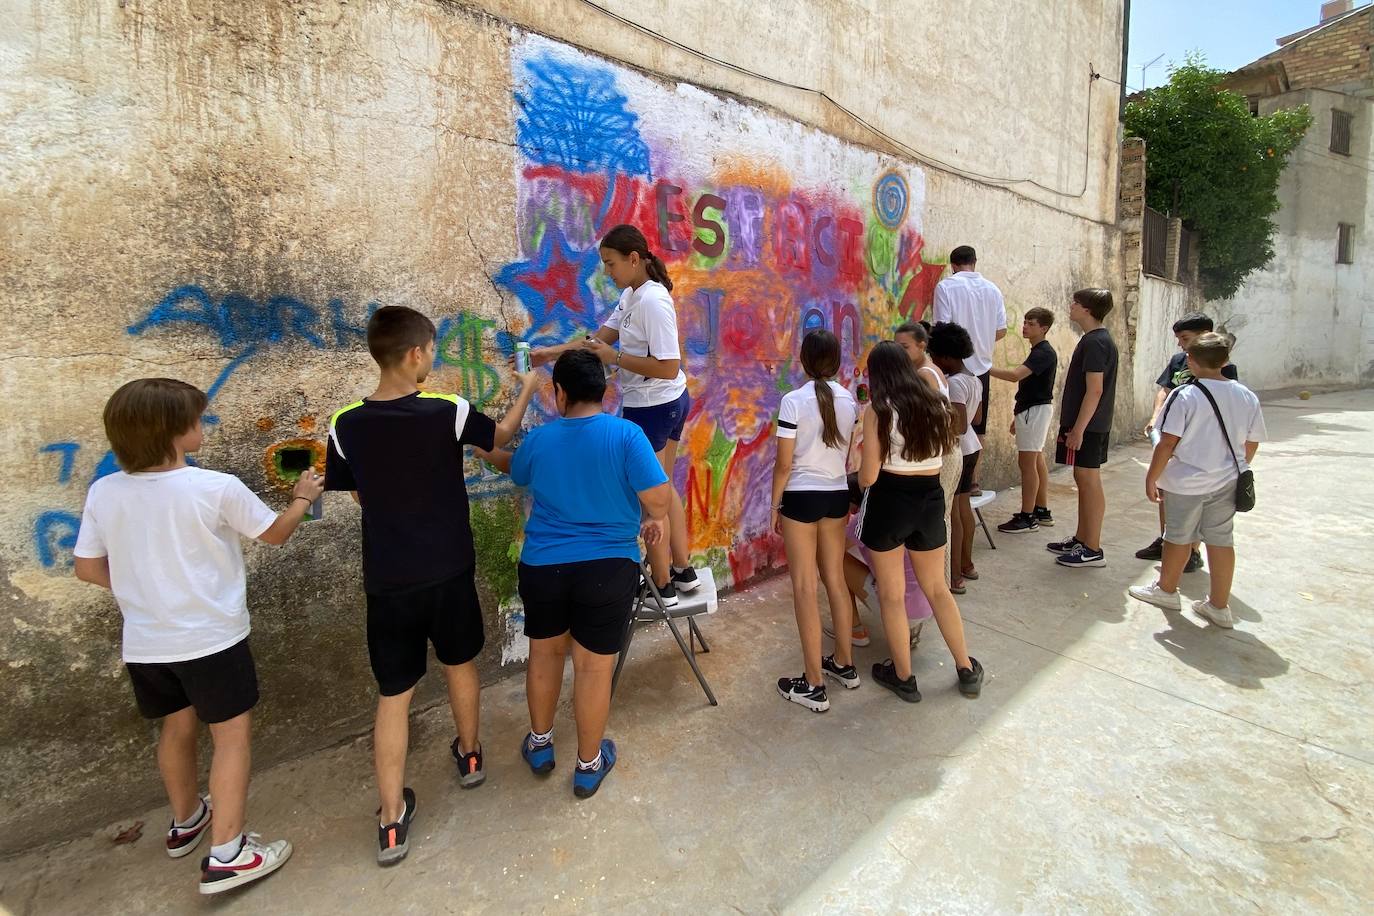 La juventud de Huétor Vega ha hecho hoy un grafiti en el Espacio Joven.